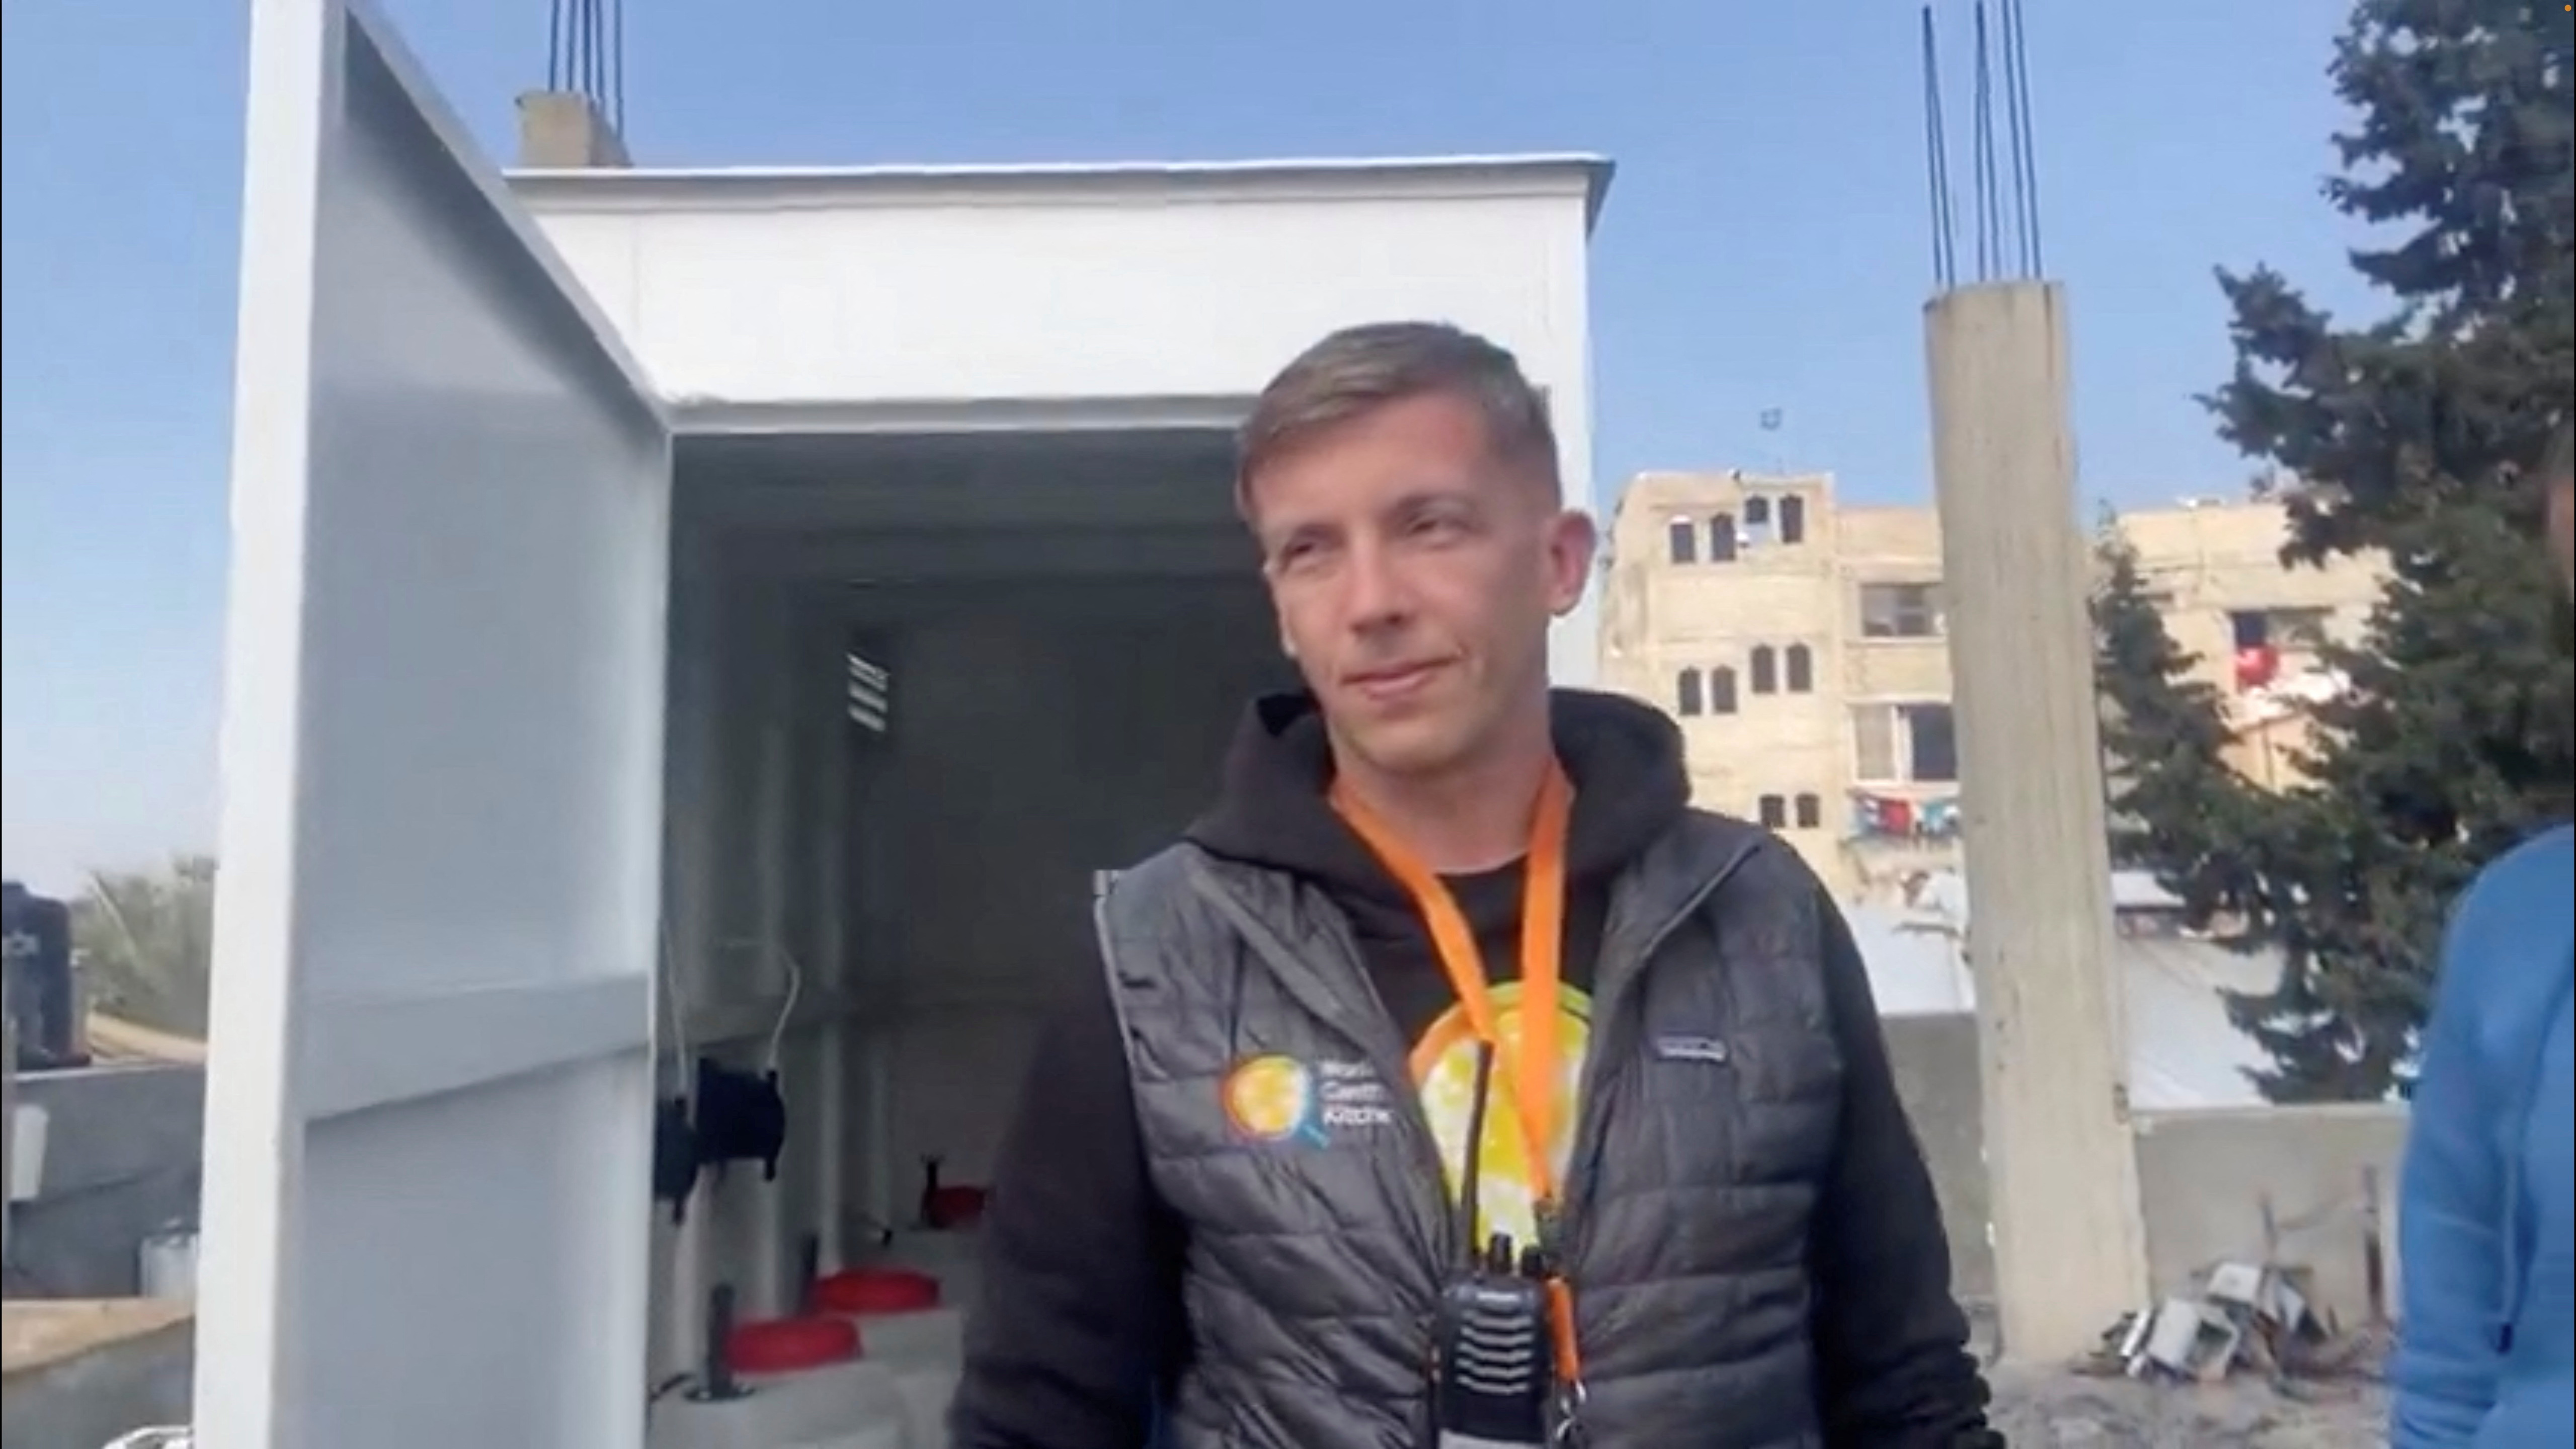 WCK volunteer Damian Sobol killed in Gaza